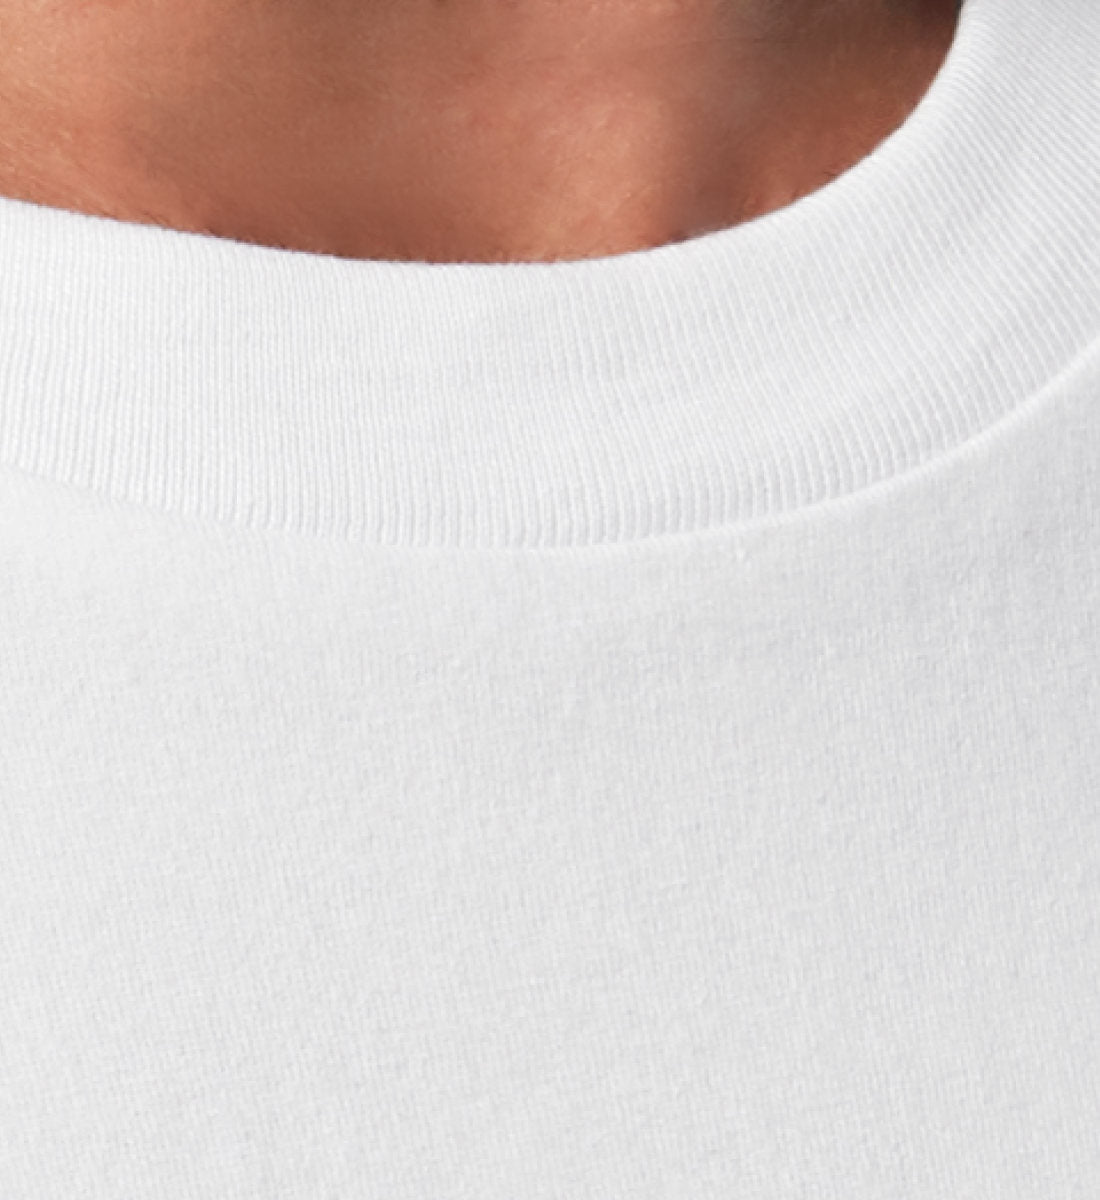 Weißes T-Shirt Unisex Relaxed Fit für Frauen und Männer bedruckt mit dem Design der Roger Rockawoo Clothing Kollektion Boxing Rope A Dope